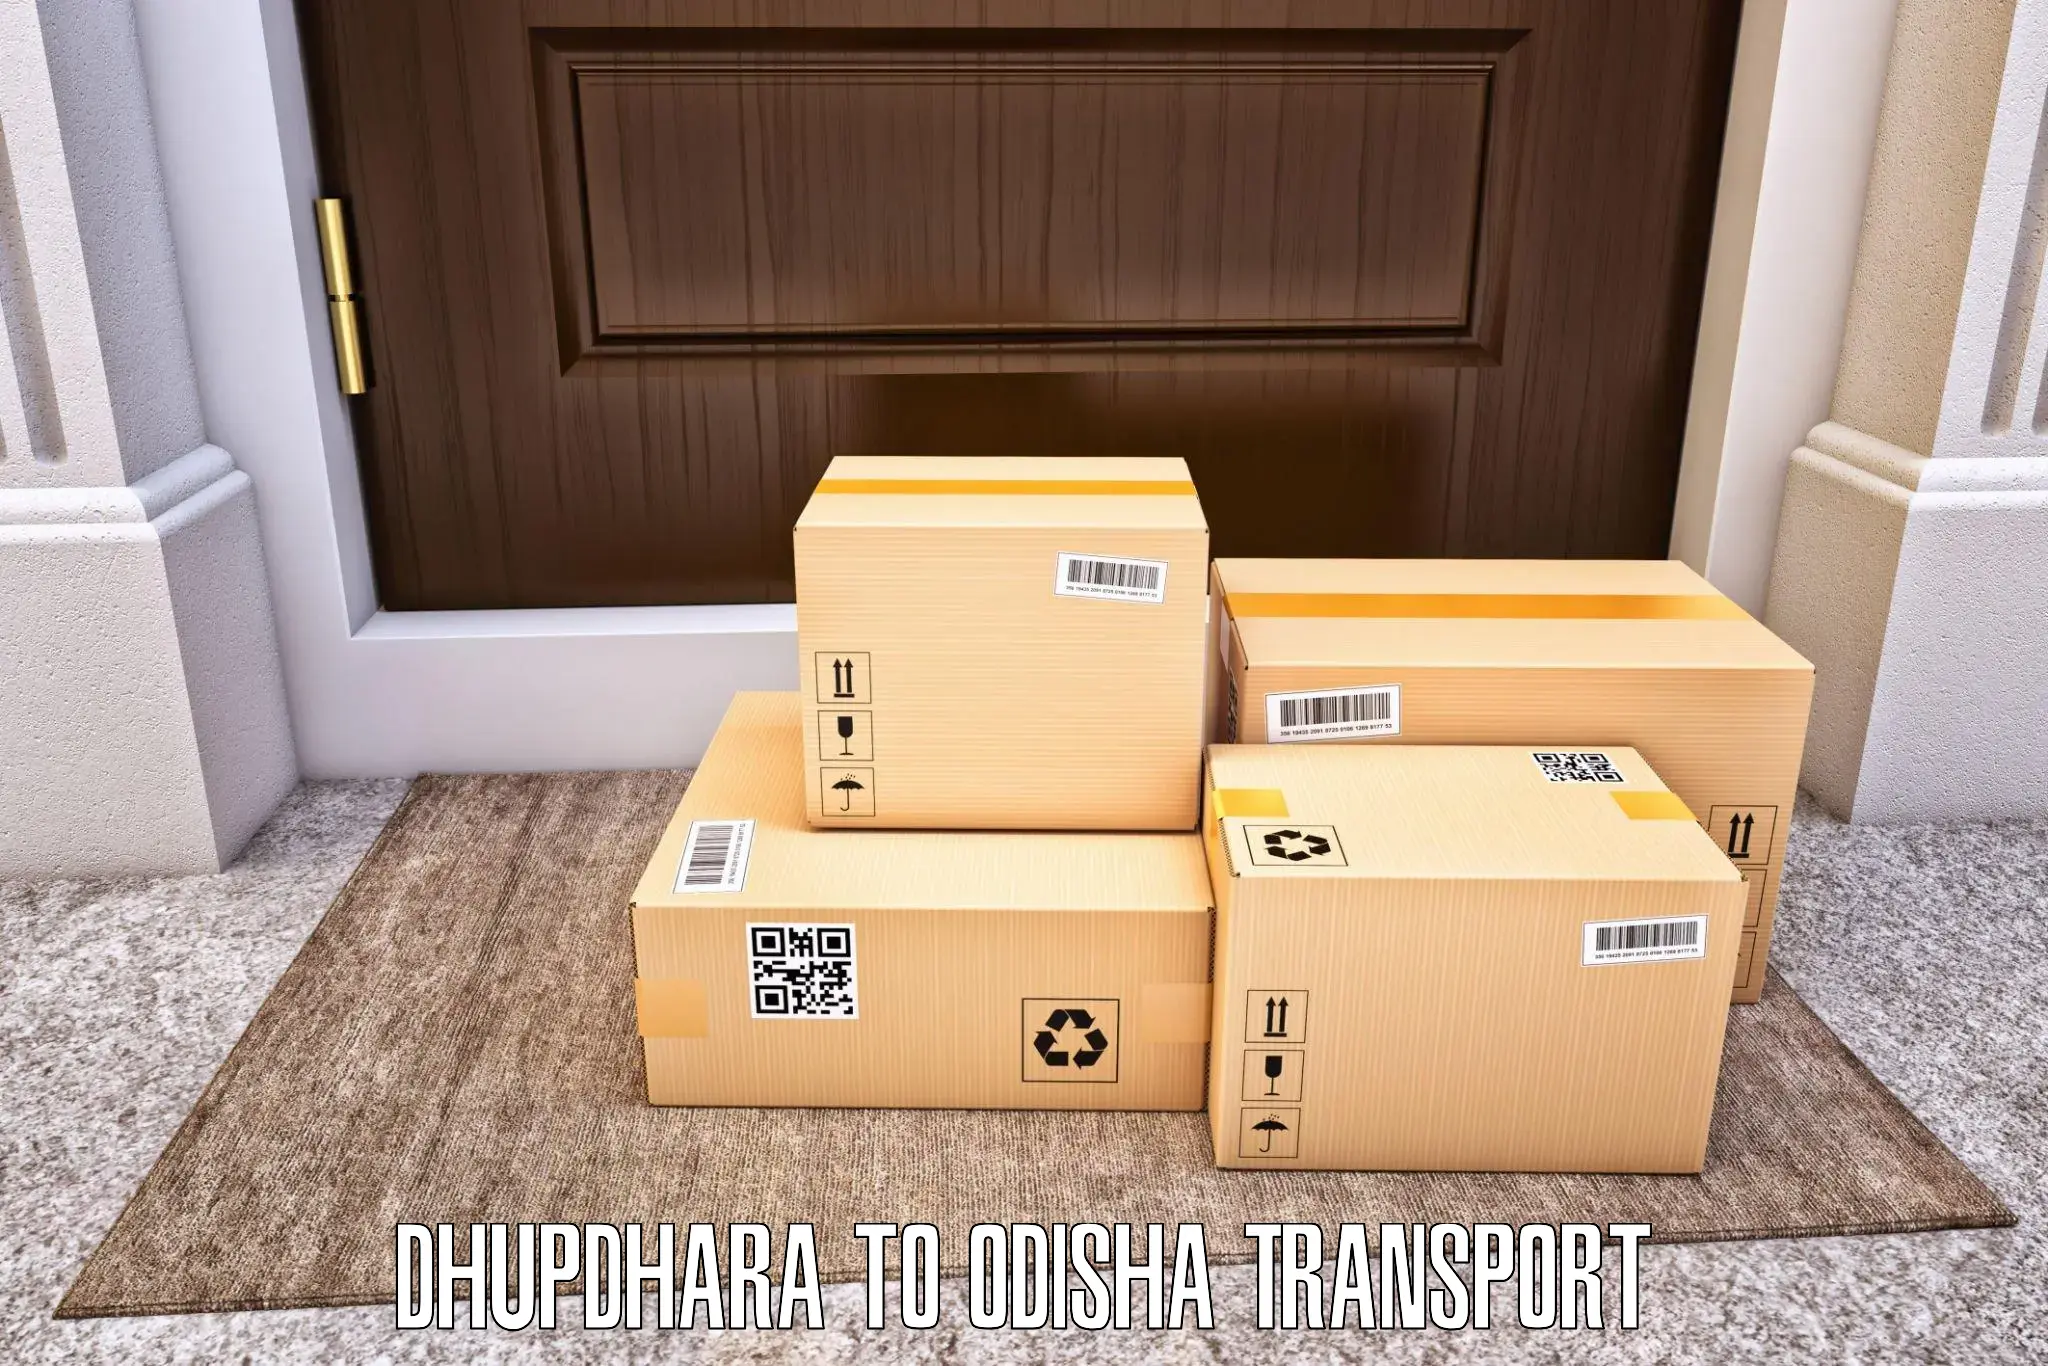 Luggage transport services Dhupdhara to Konark